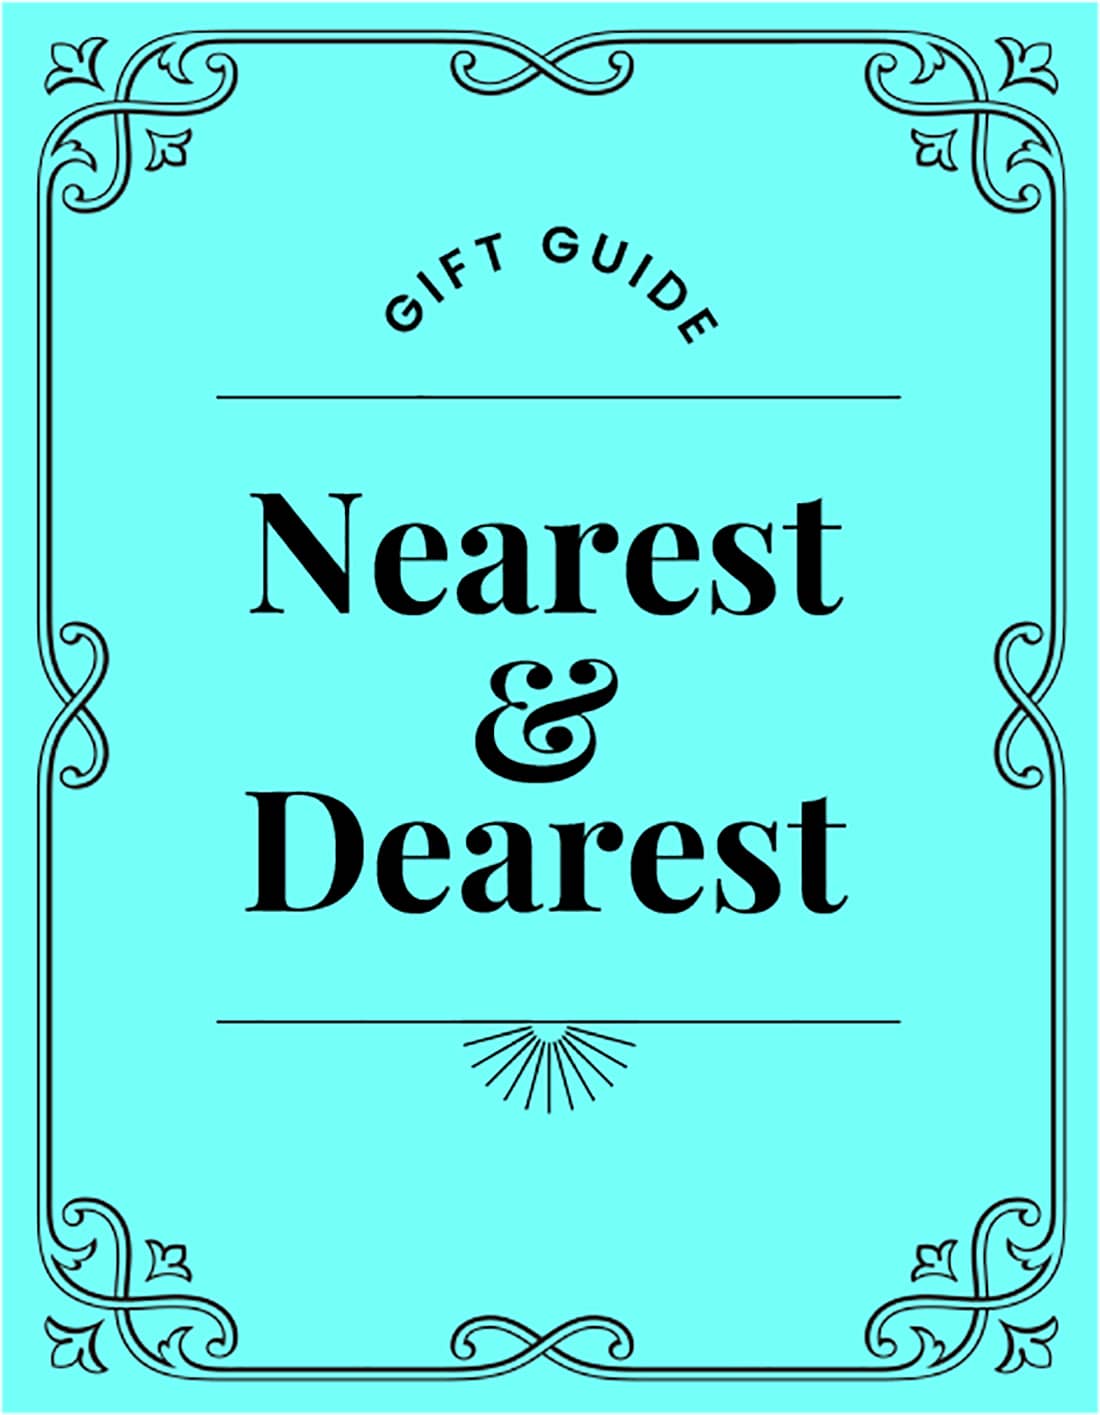 Gift Guide. Nearest & Dearest